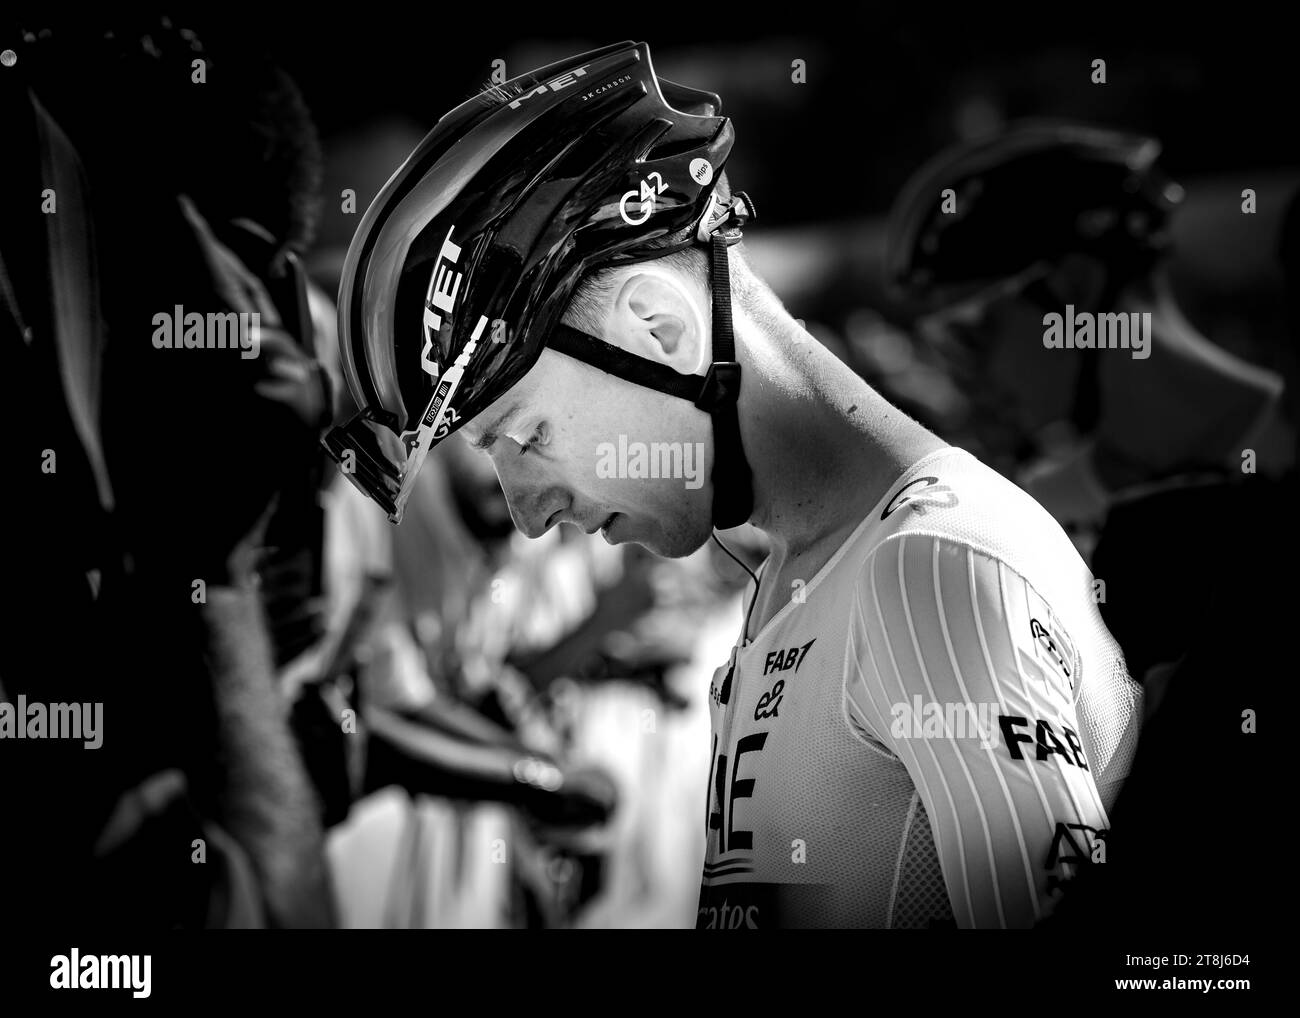 Coppa Sabatini-  Giro della Toscana - Peccioli Stock Photo